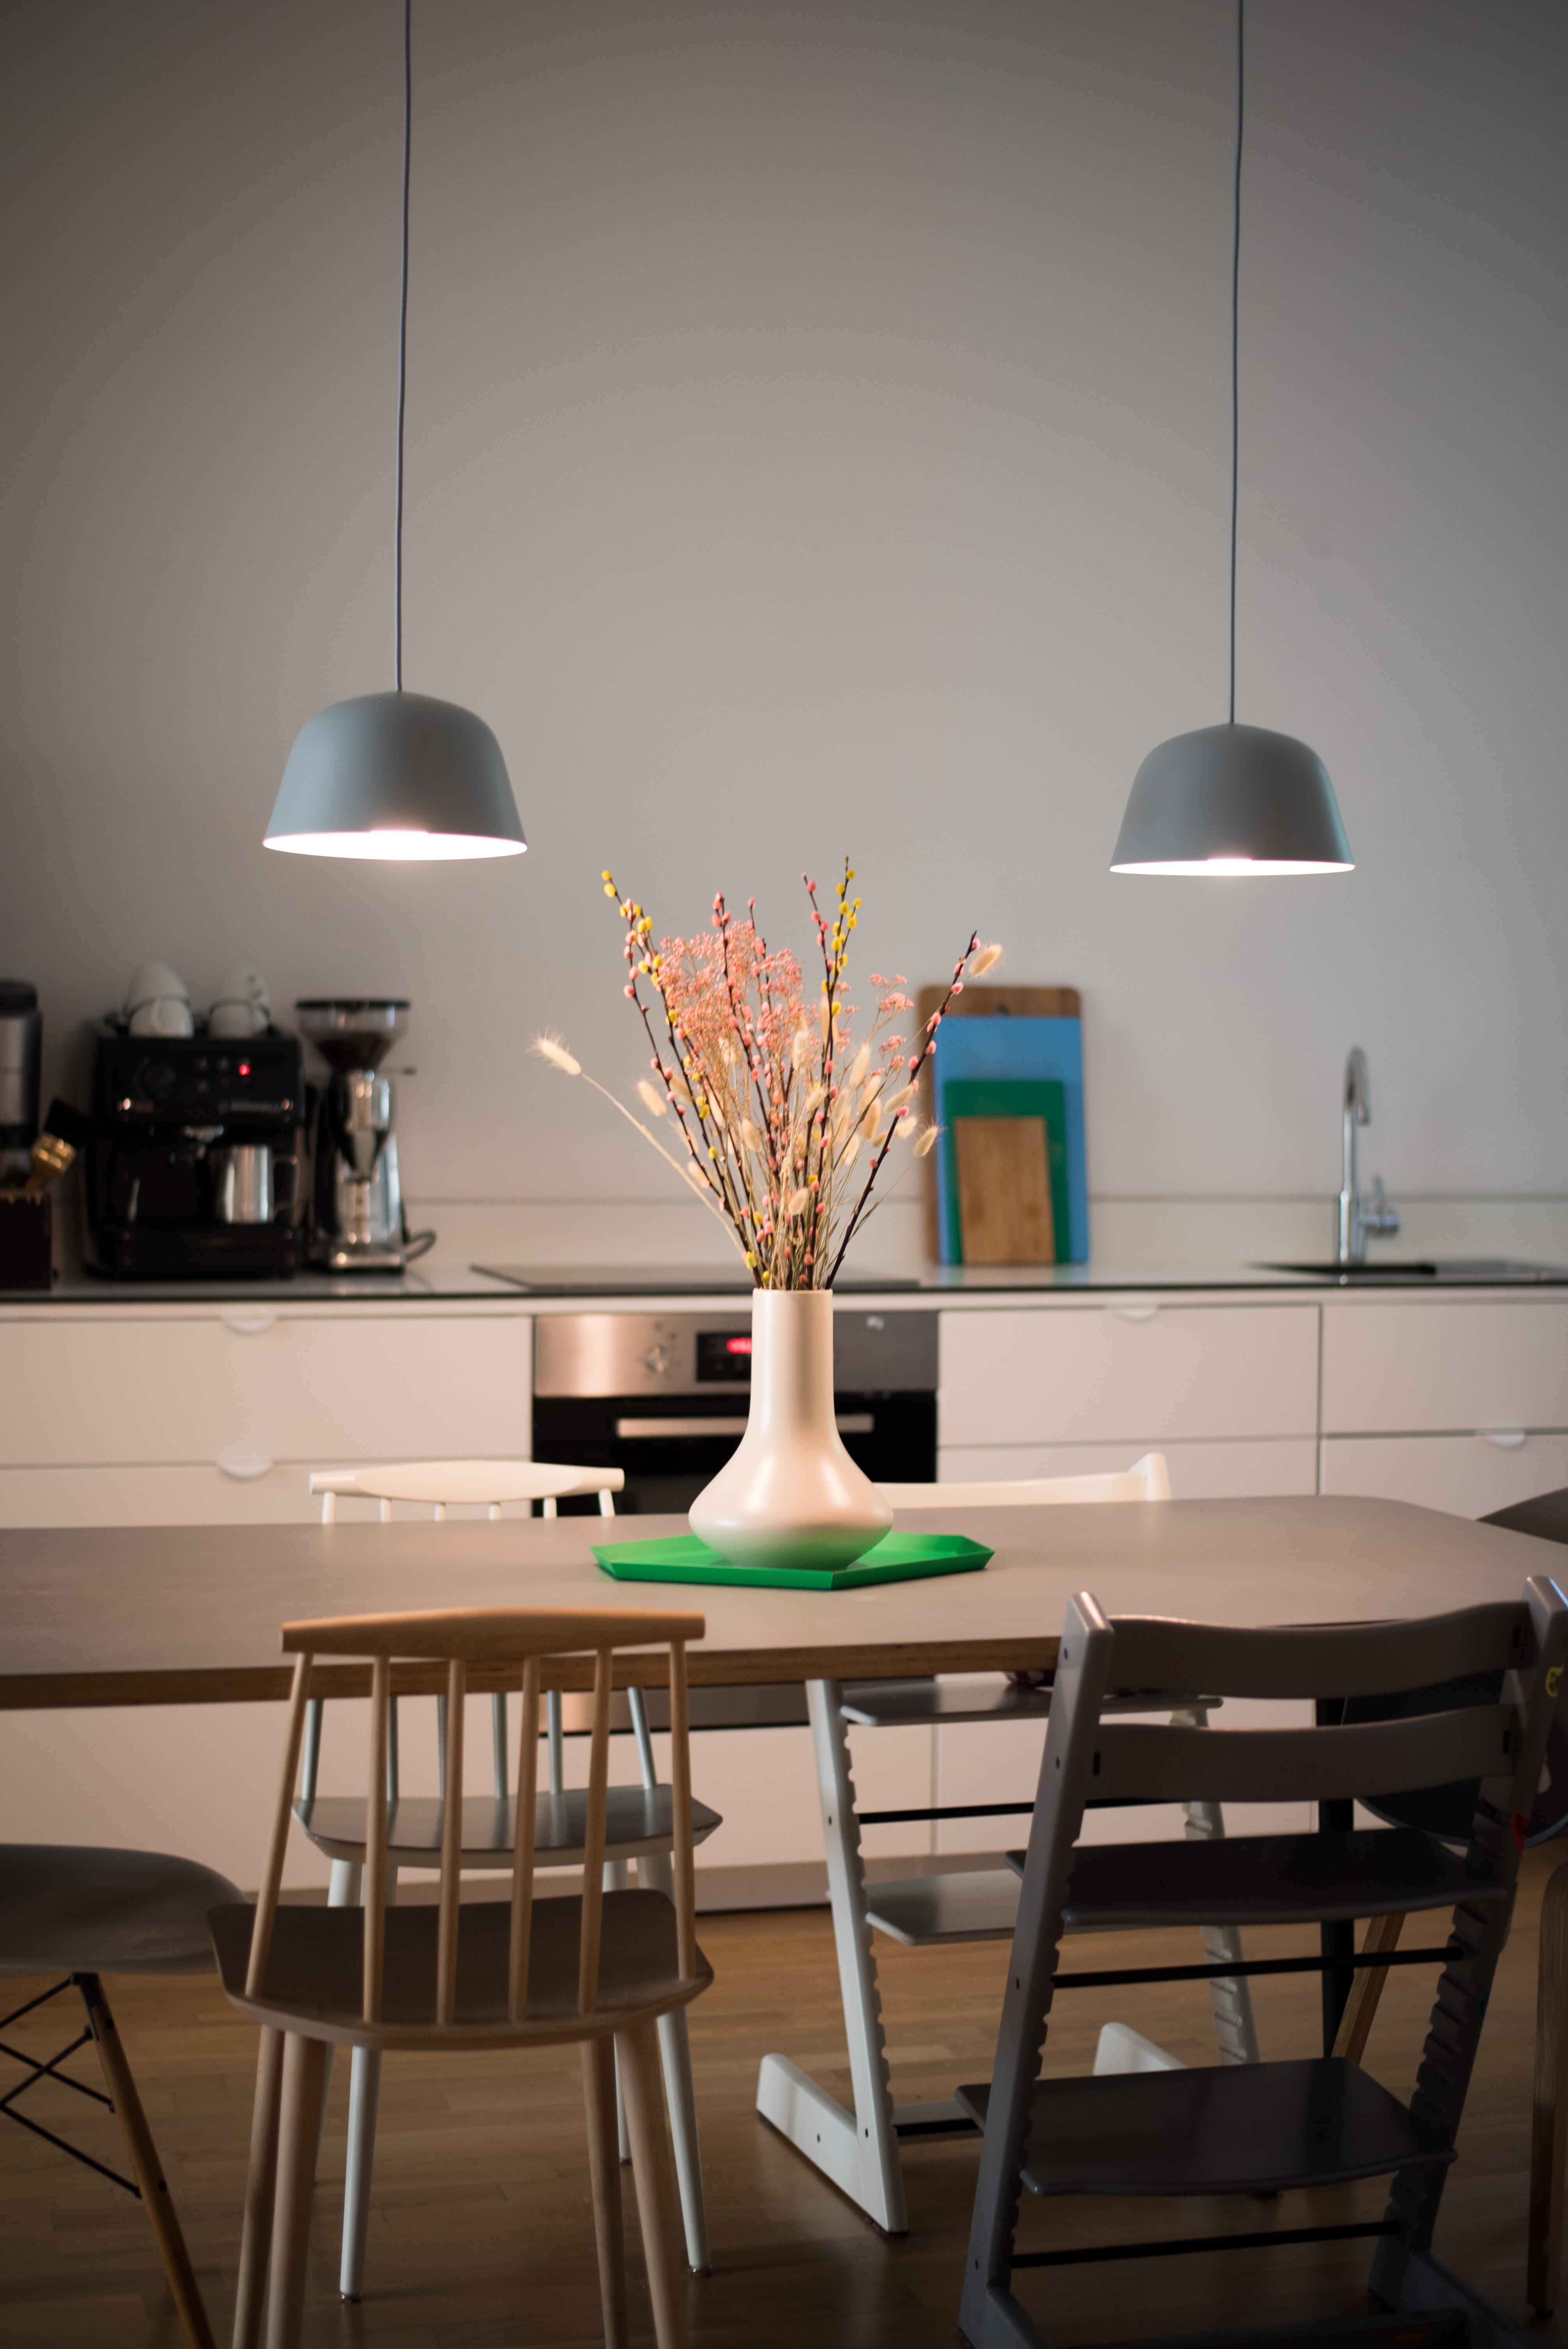 Guten Morgen! #kitchenview #trockenblumen #wohnküche #altbau #kitchenstyle #interior